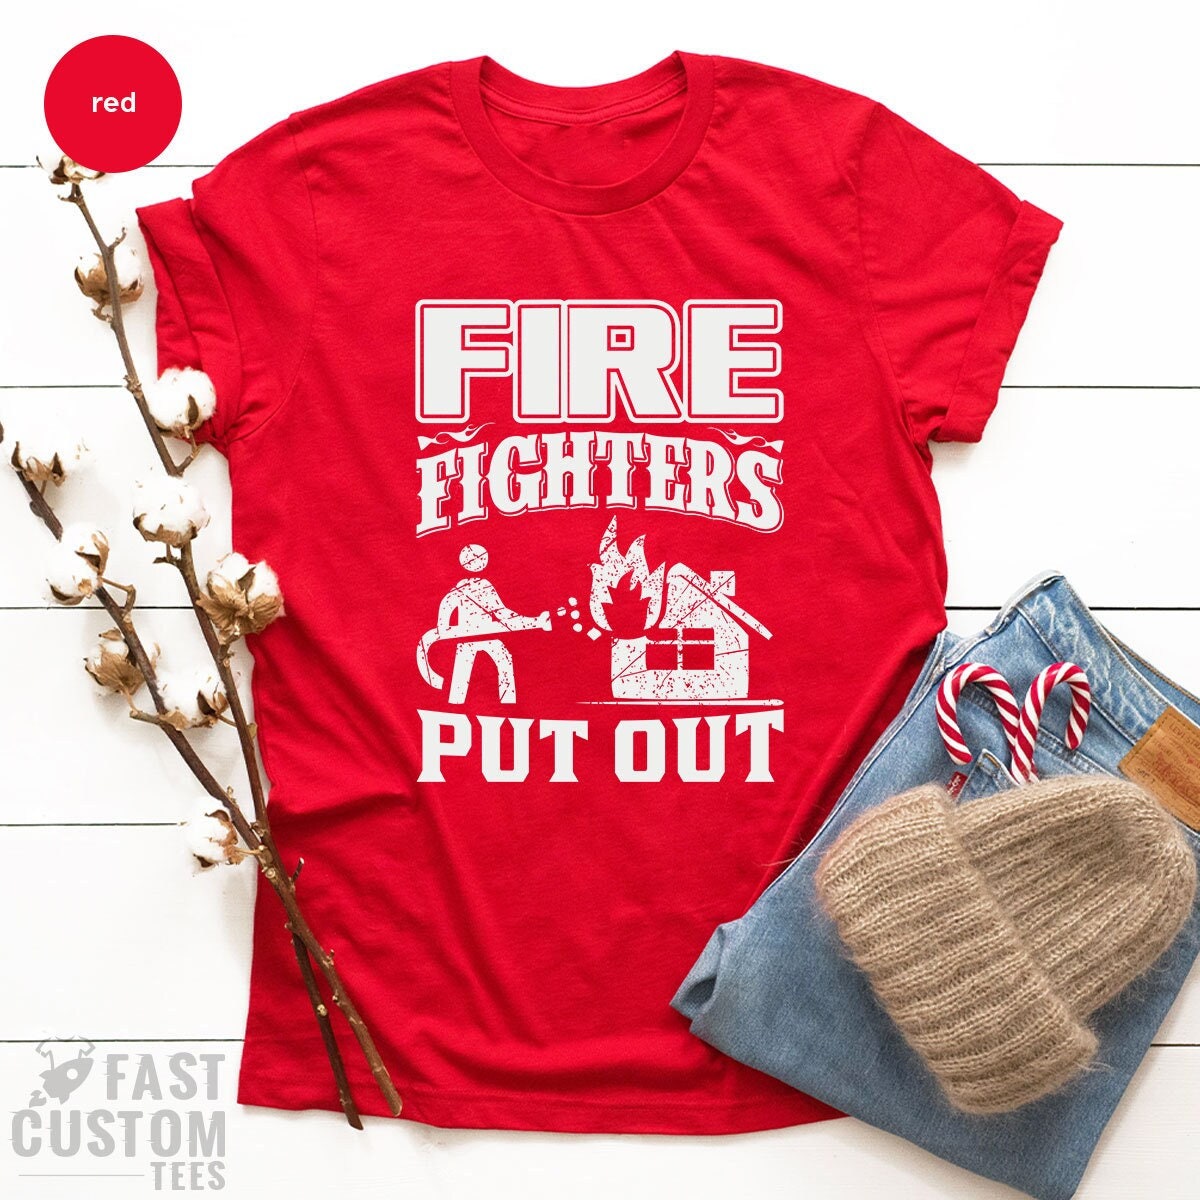 Firefighter Shirt, Fireman T Shirt, Fireman TShirt, Fire Department Shirts, Gift For Fireman, Fire Dept Tee, Fire Fighter Gifts - Fastdeliverytees.com